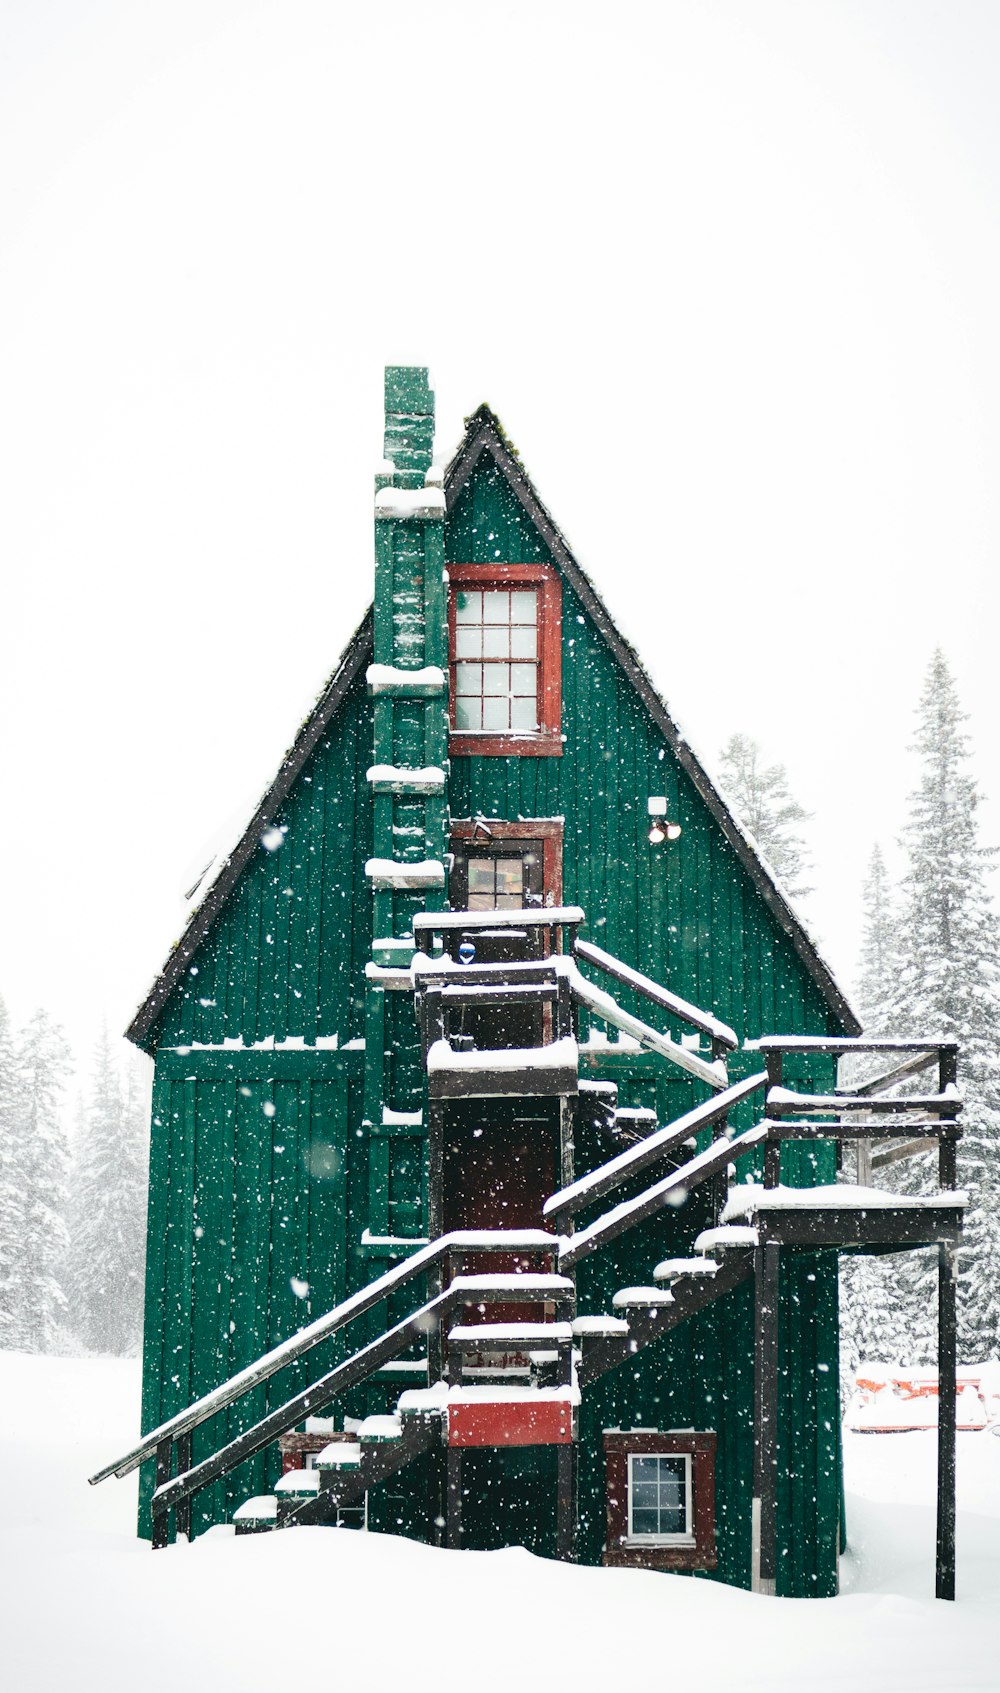 Fotografía de lapso de tiempo de nieve cayendo sobre una casa de madera verde